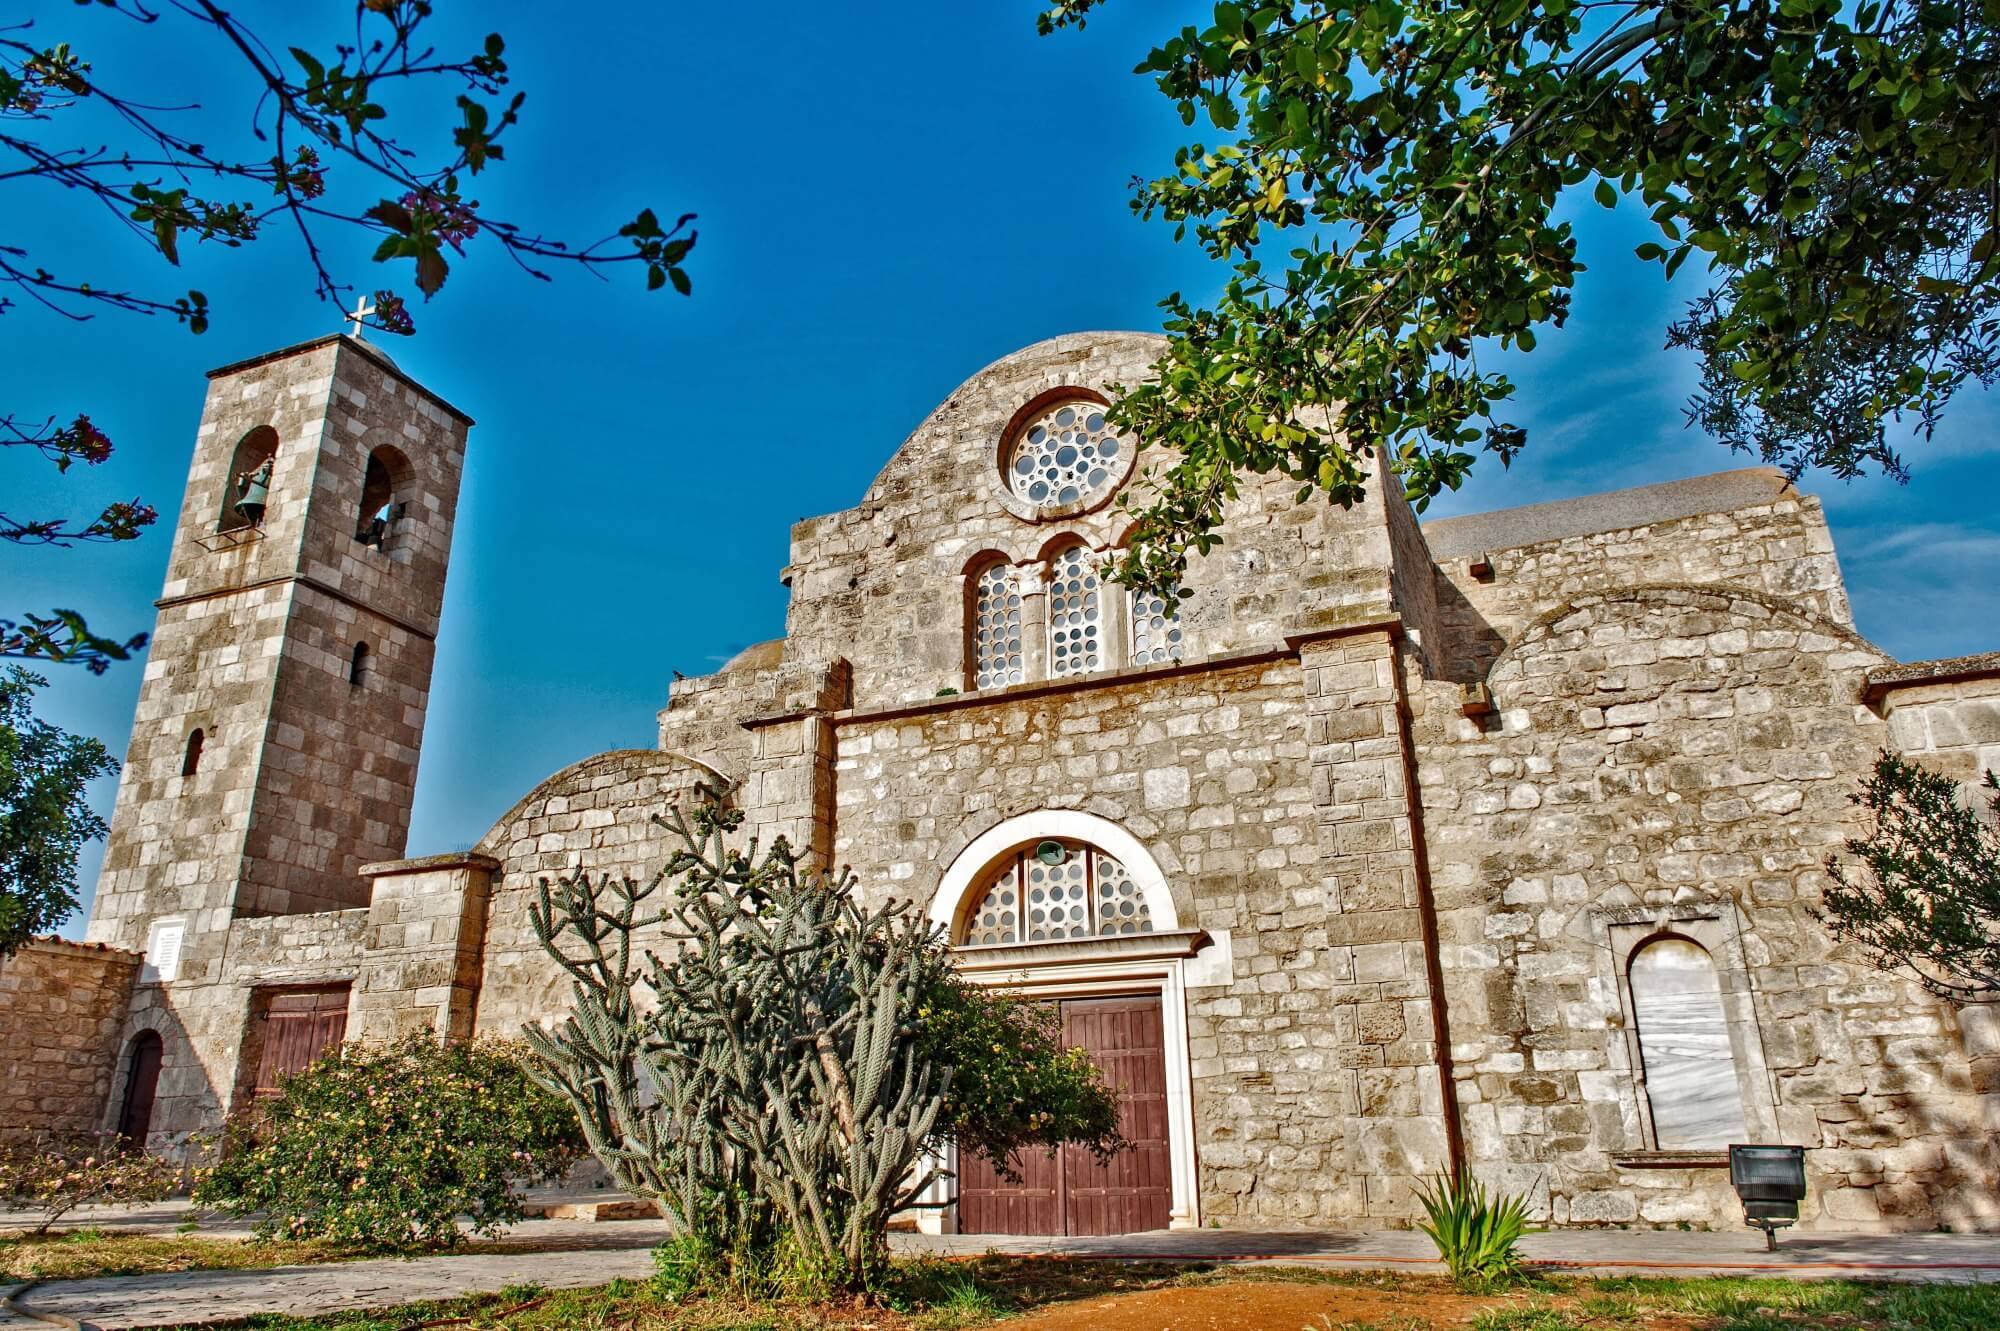 St. Barnabas Church, North Cyprus